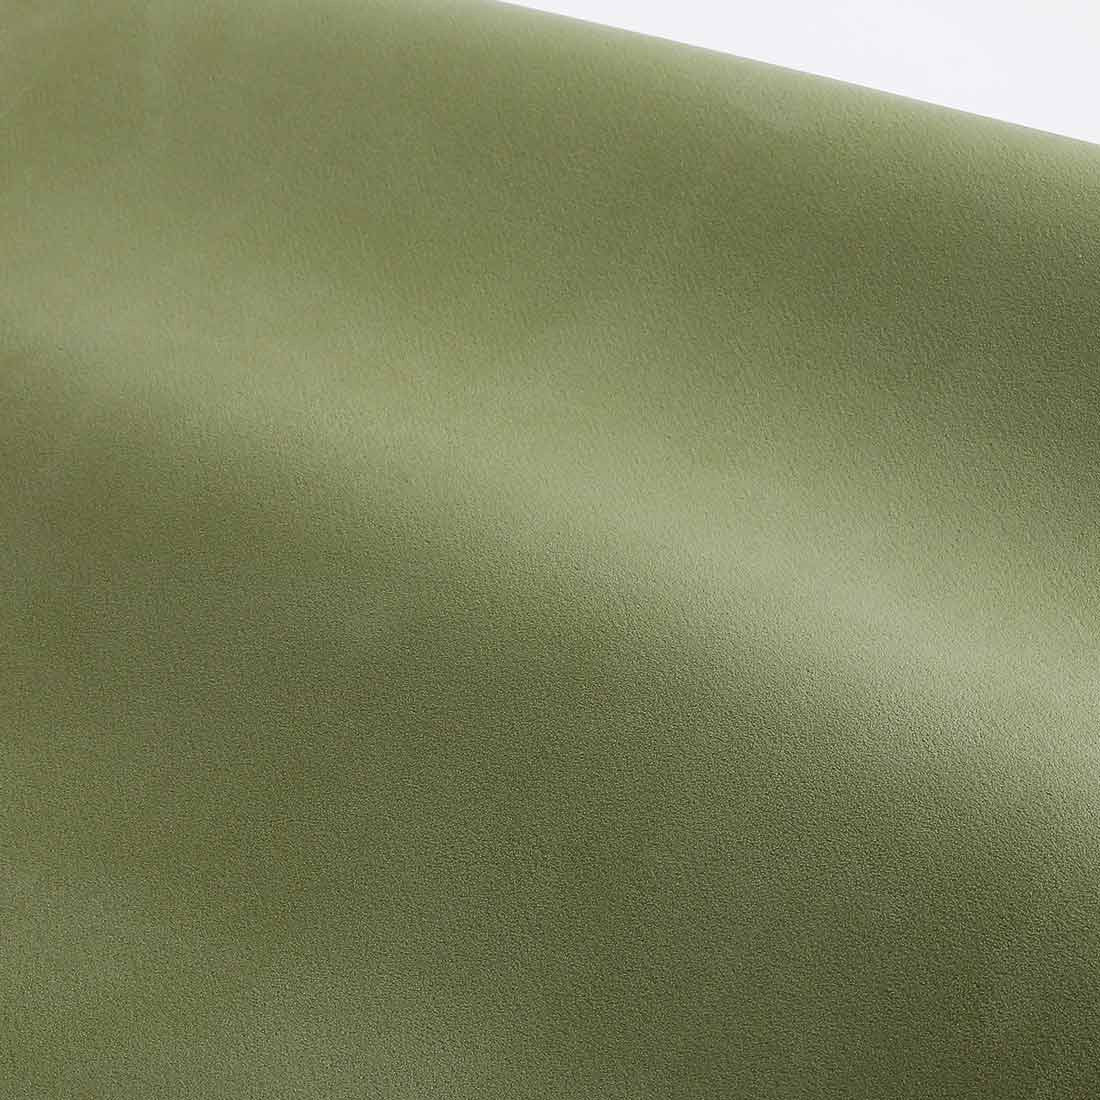 easyoga Premium Natural Rubber Yoga Mat - G02 Green/Brown